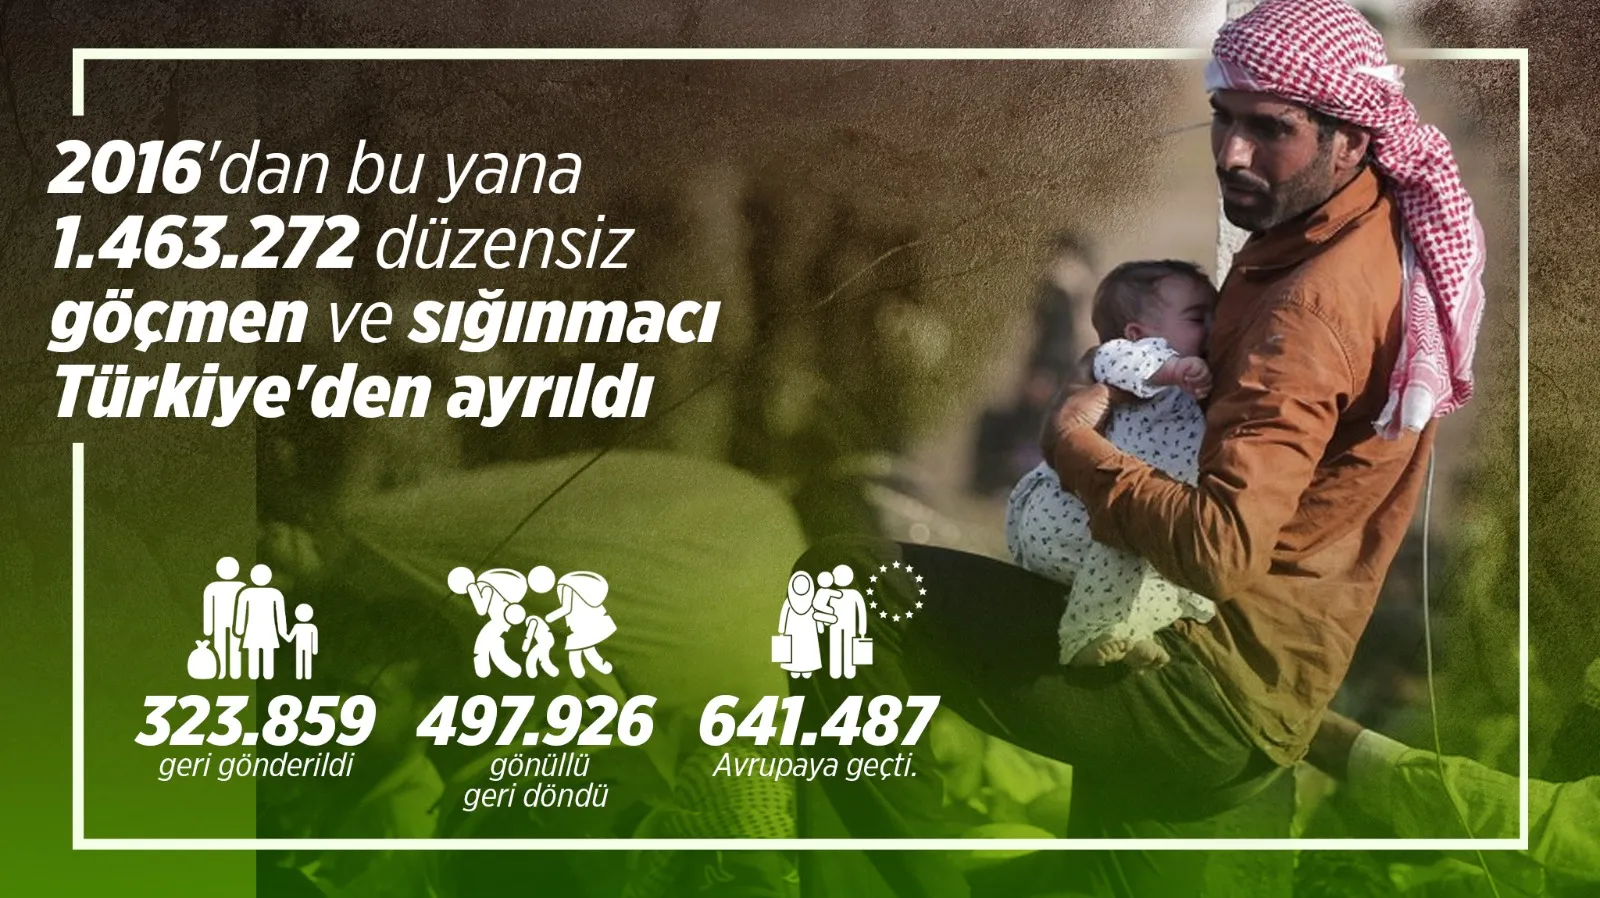 نشطاء أتراك يطلقون حملة لتصحيح المعلومات الخاطئة حول اللاجئين السوريين